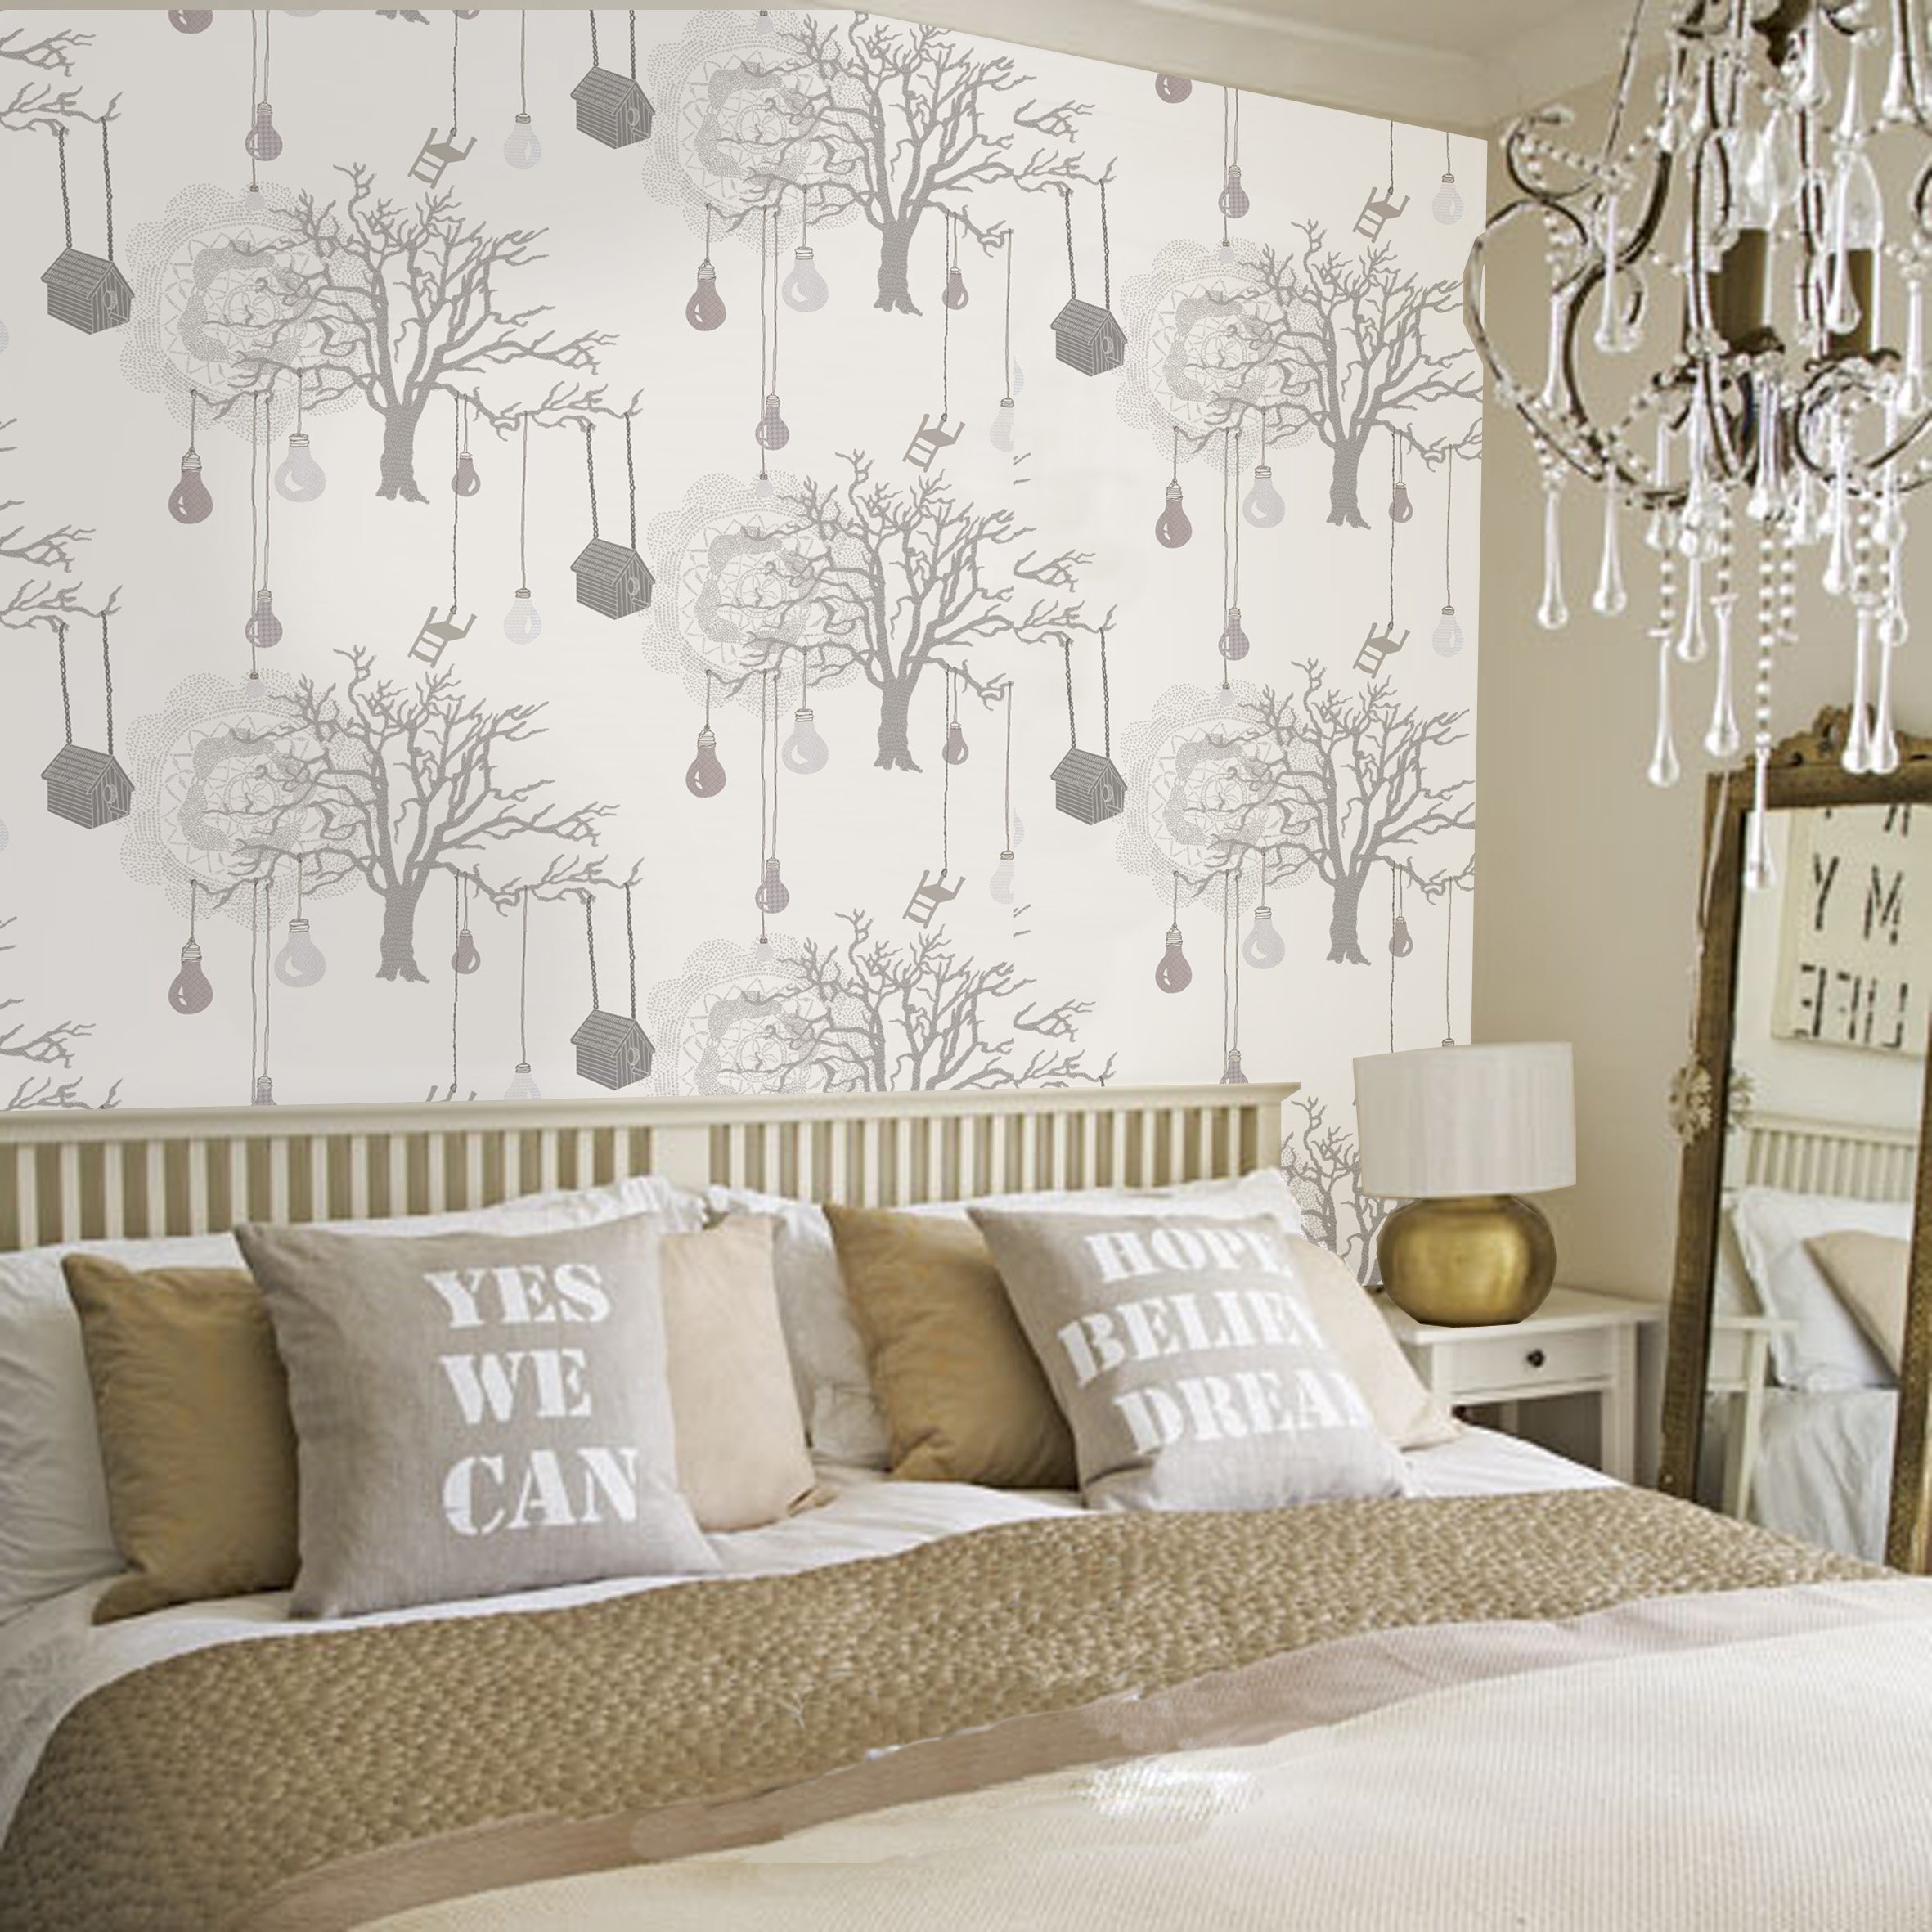 30 Best Diy Wallpaper Designs for Bedrooms UK 2015 2362x2362